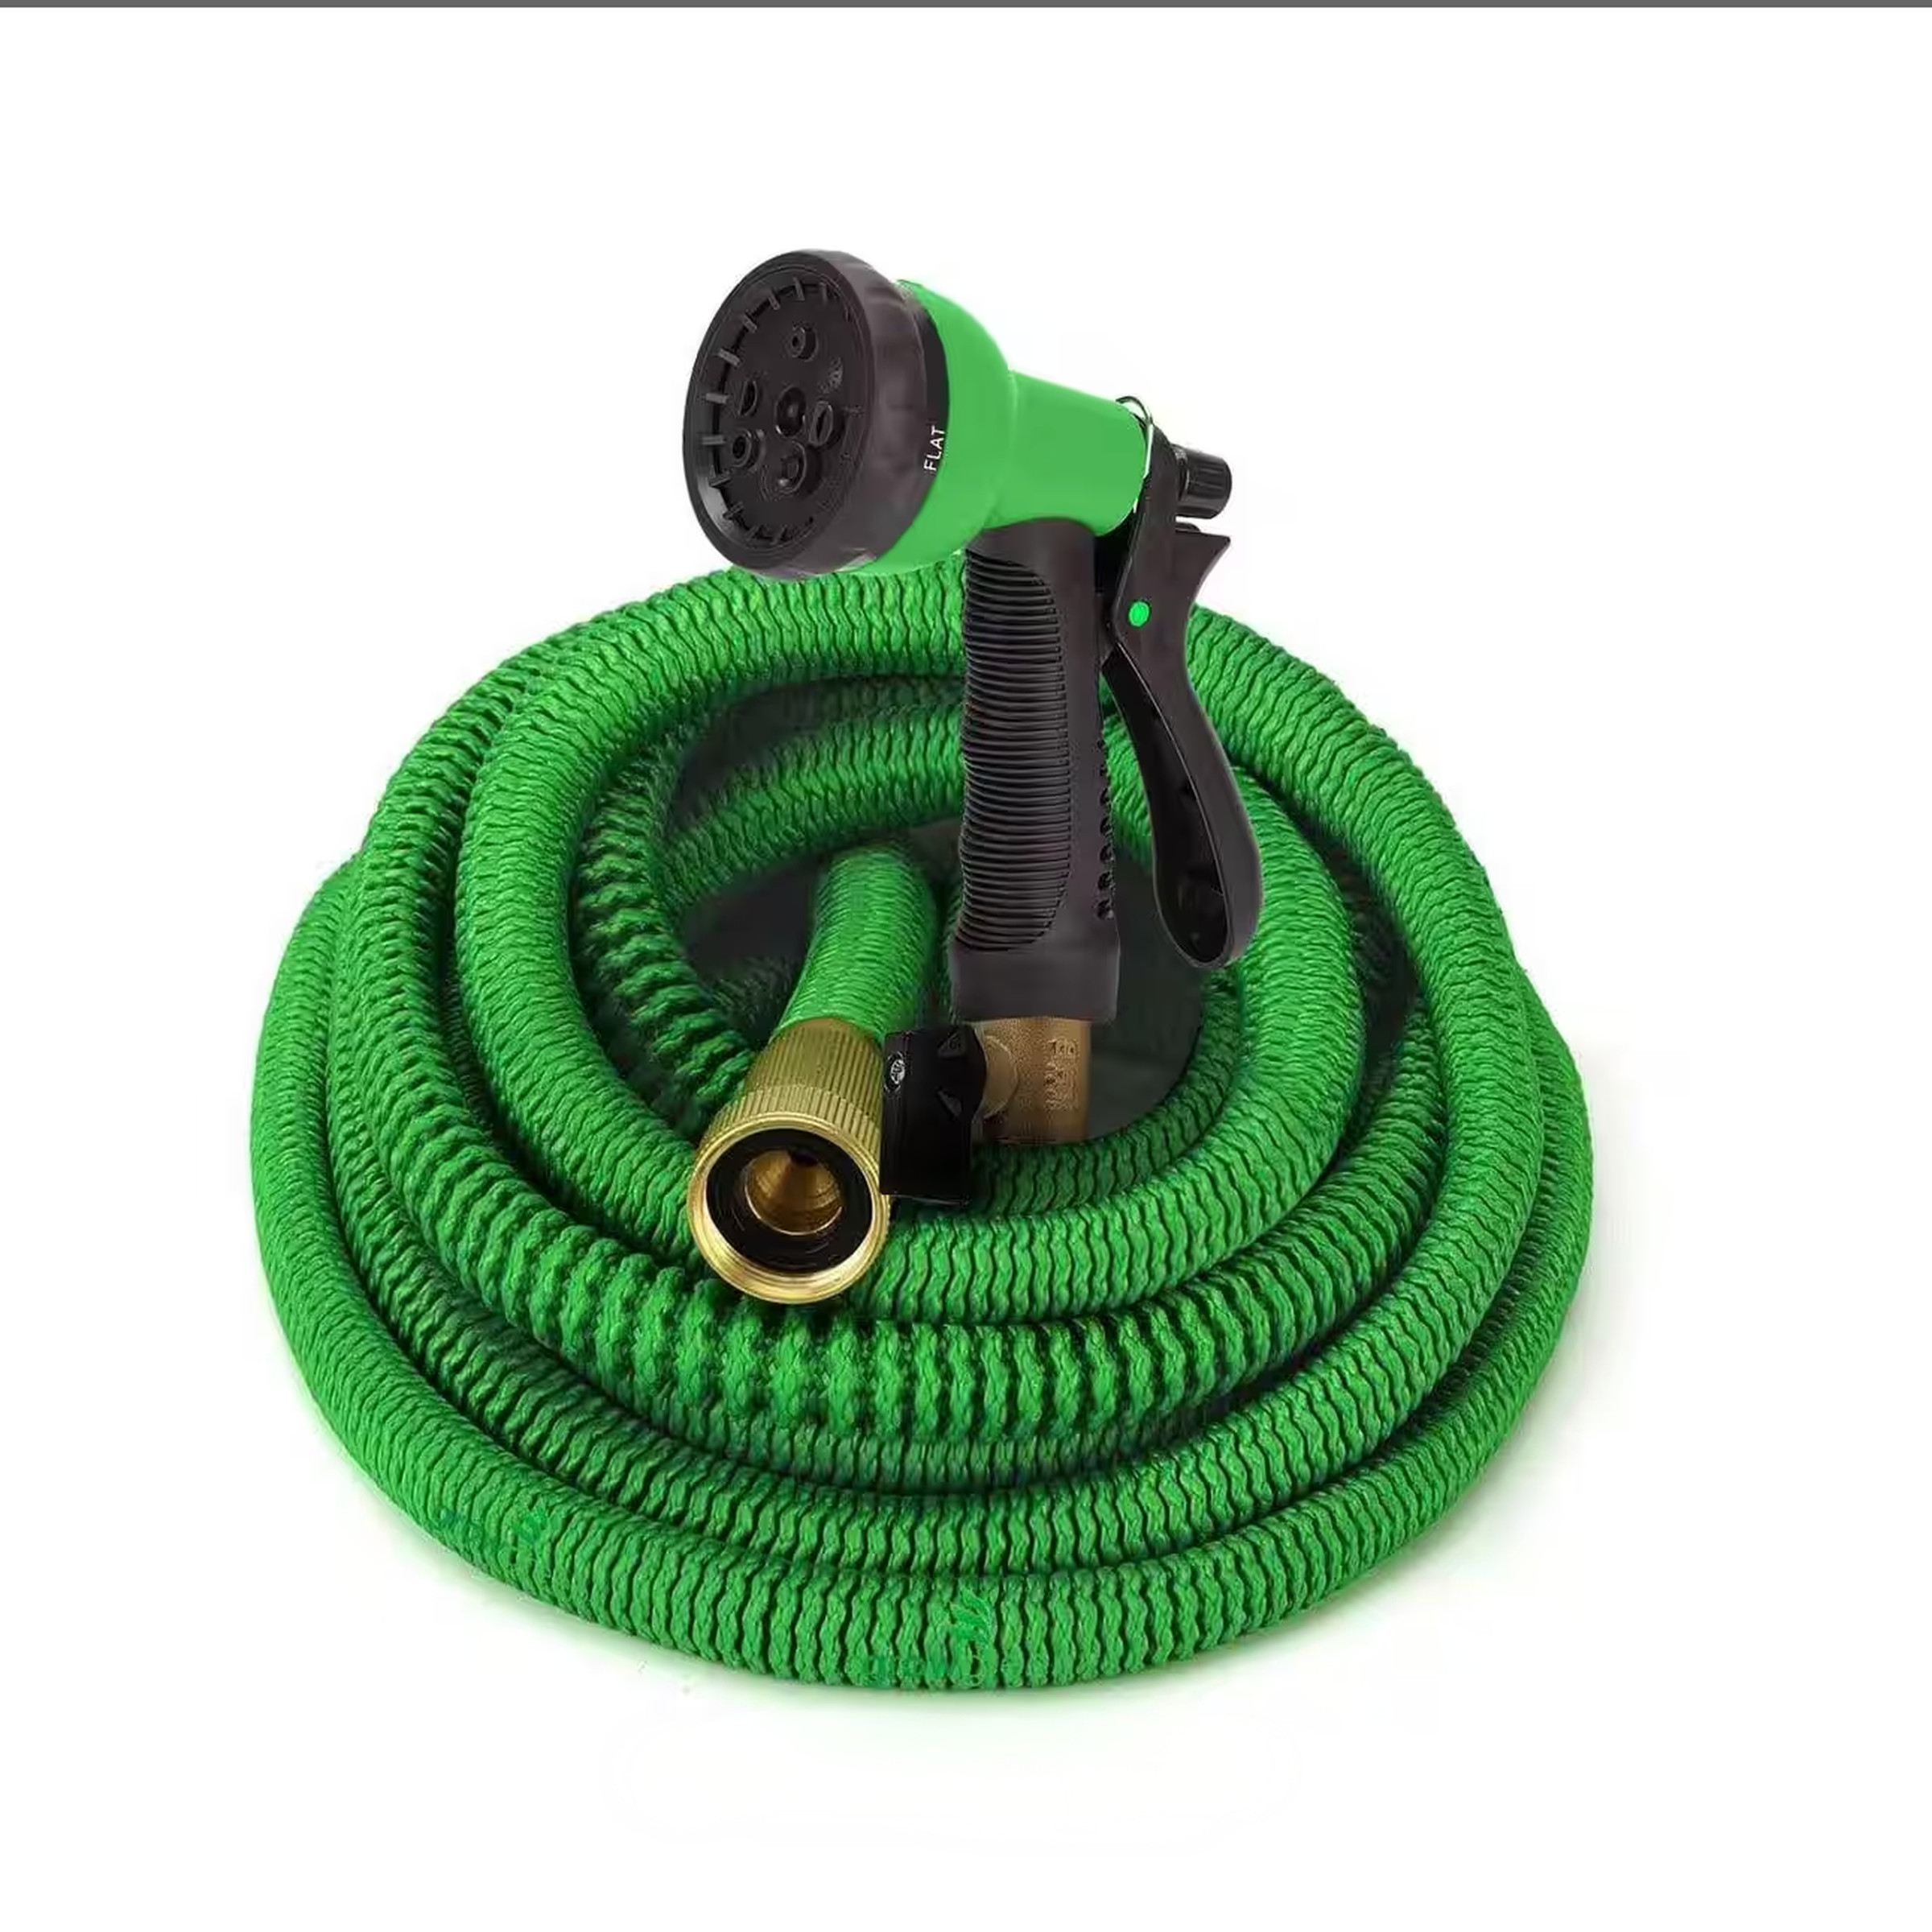 Coiled garden hose